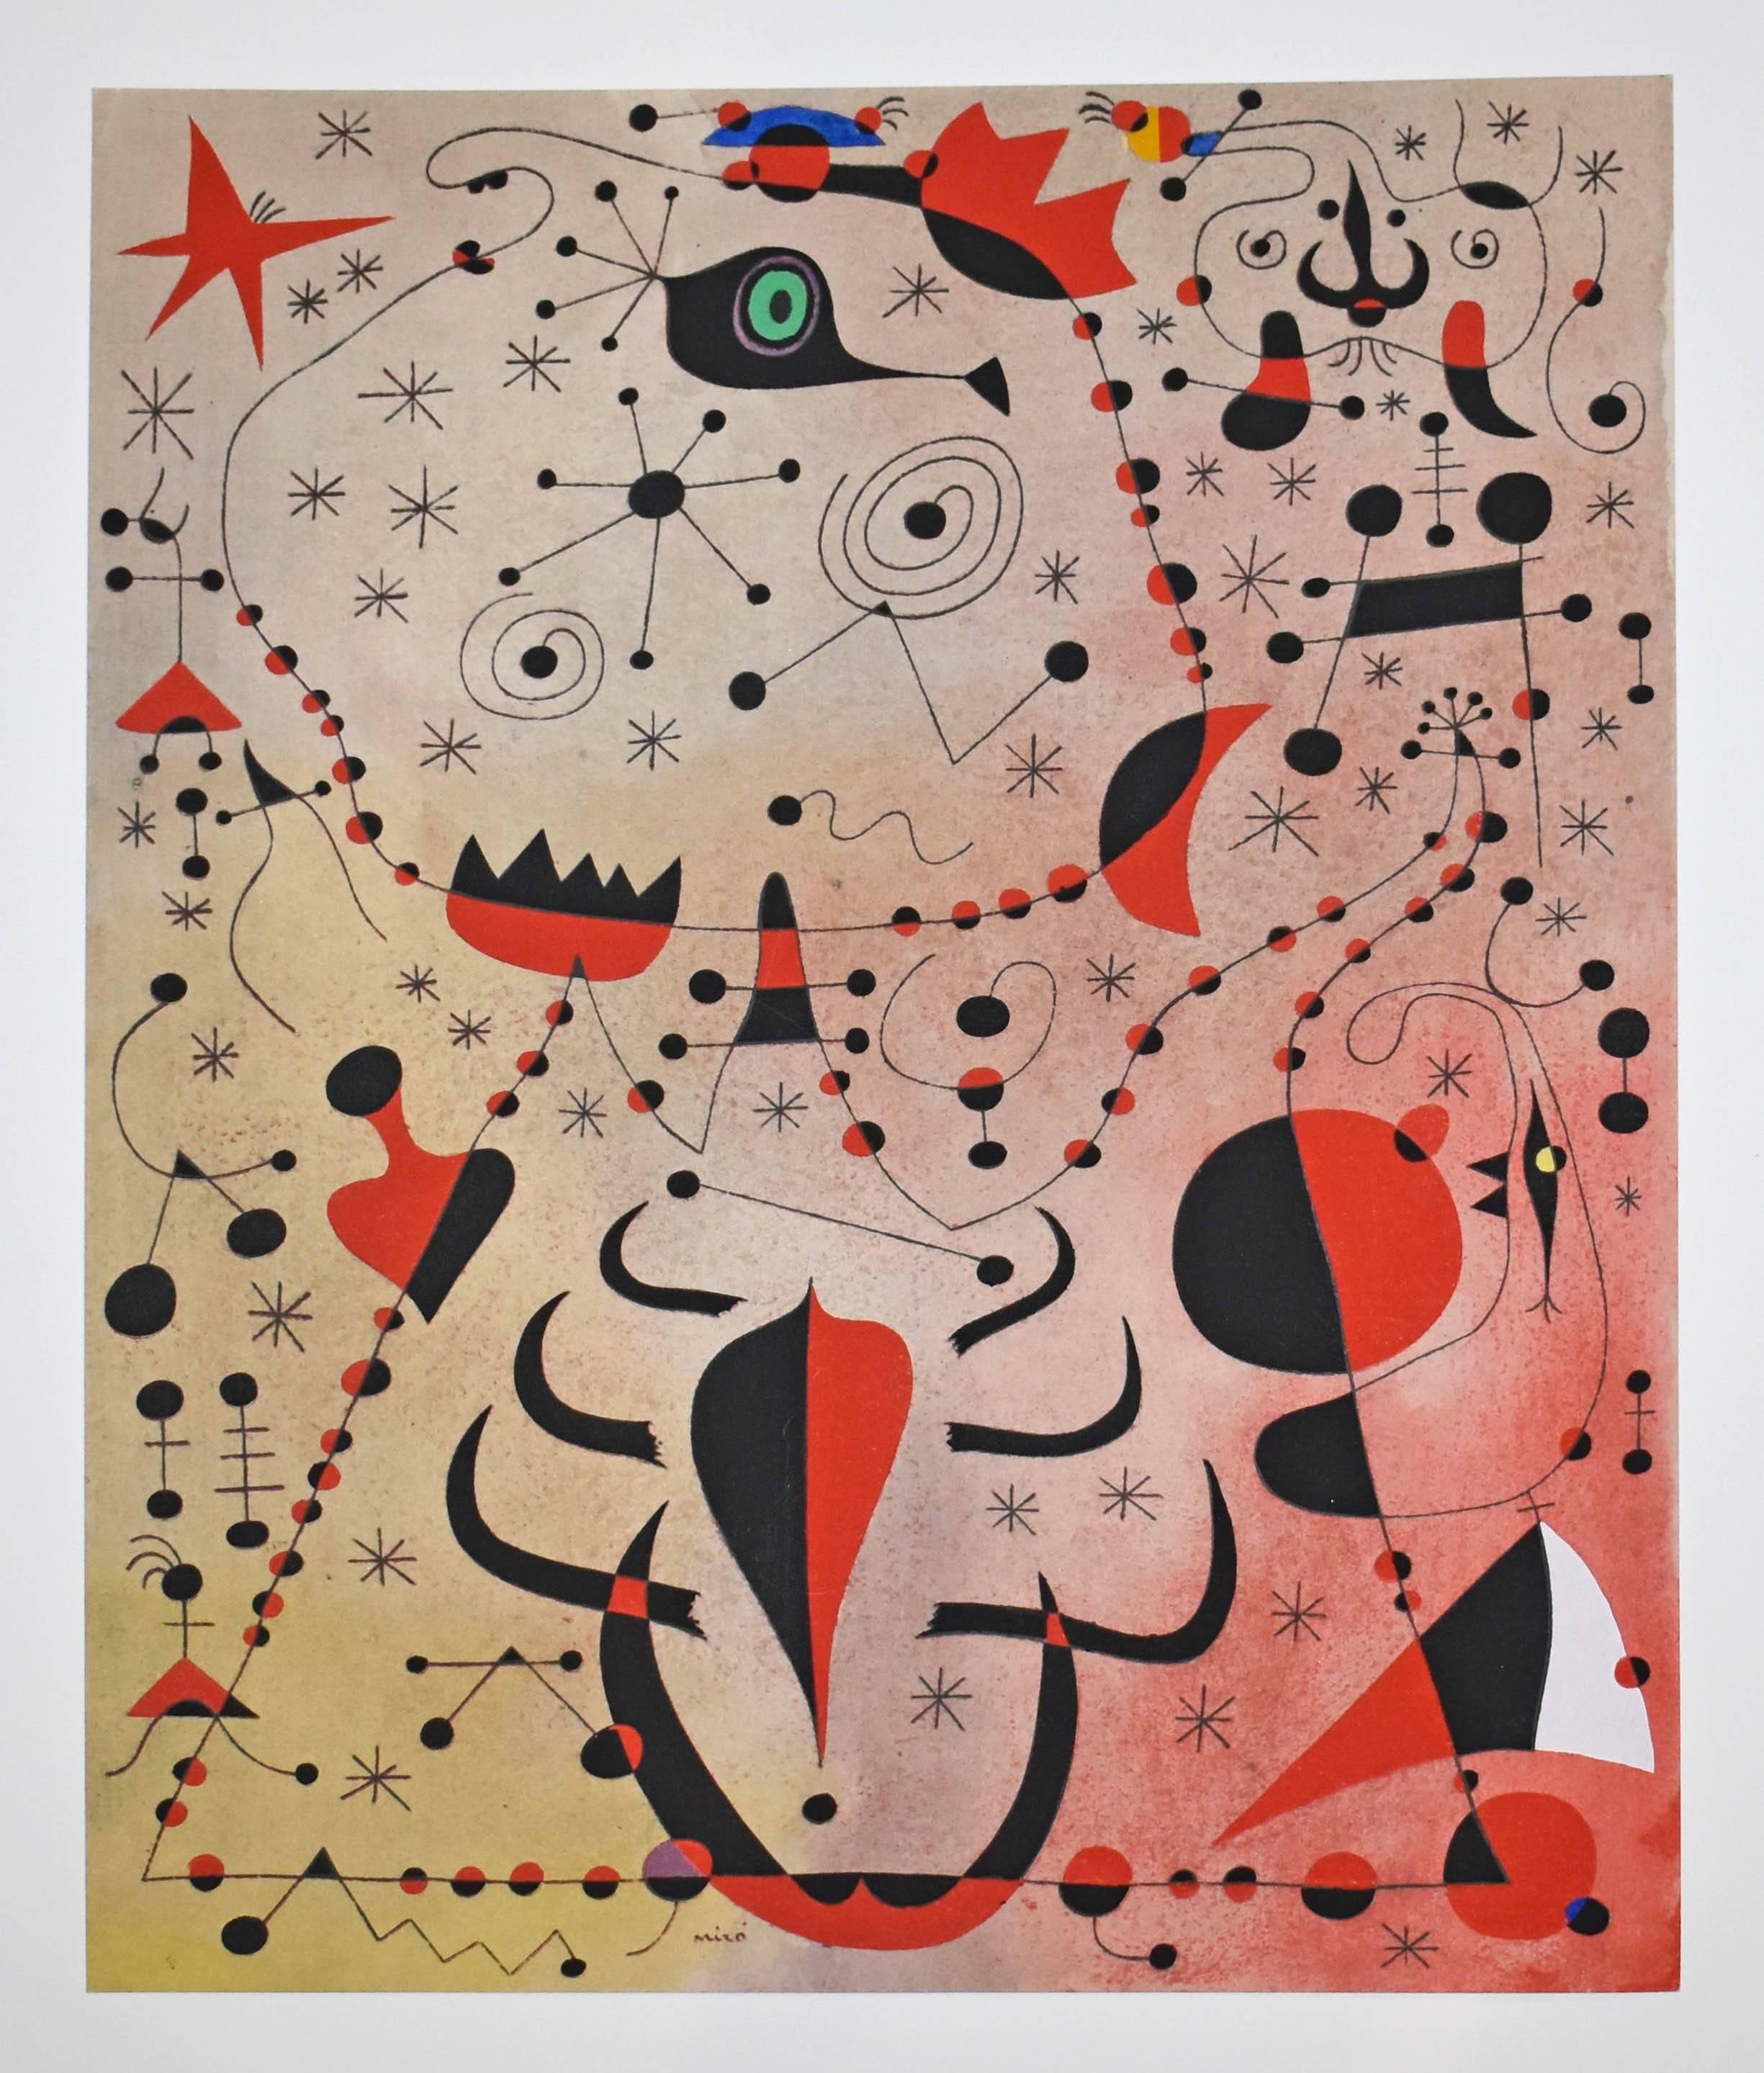 Le crepuscule rose caresse les femmes et les oiseaux, from Constellations - Print by (after) Joan Miró